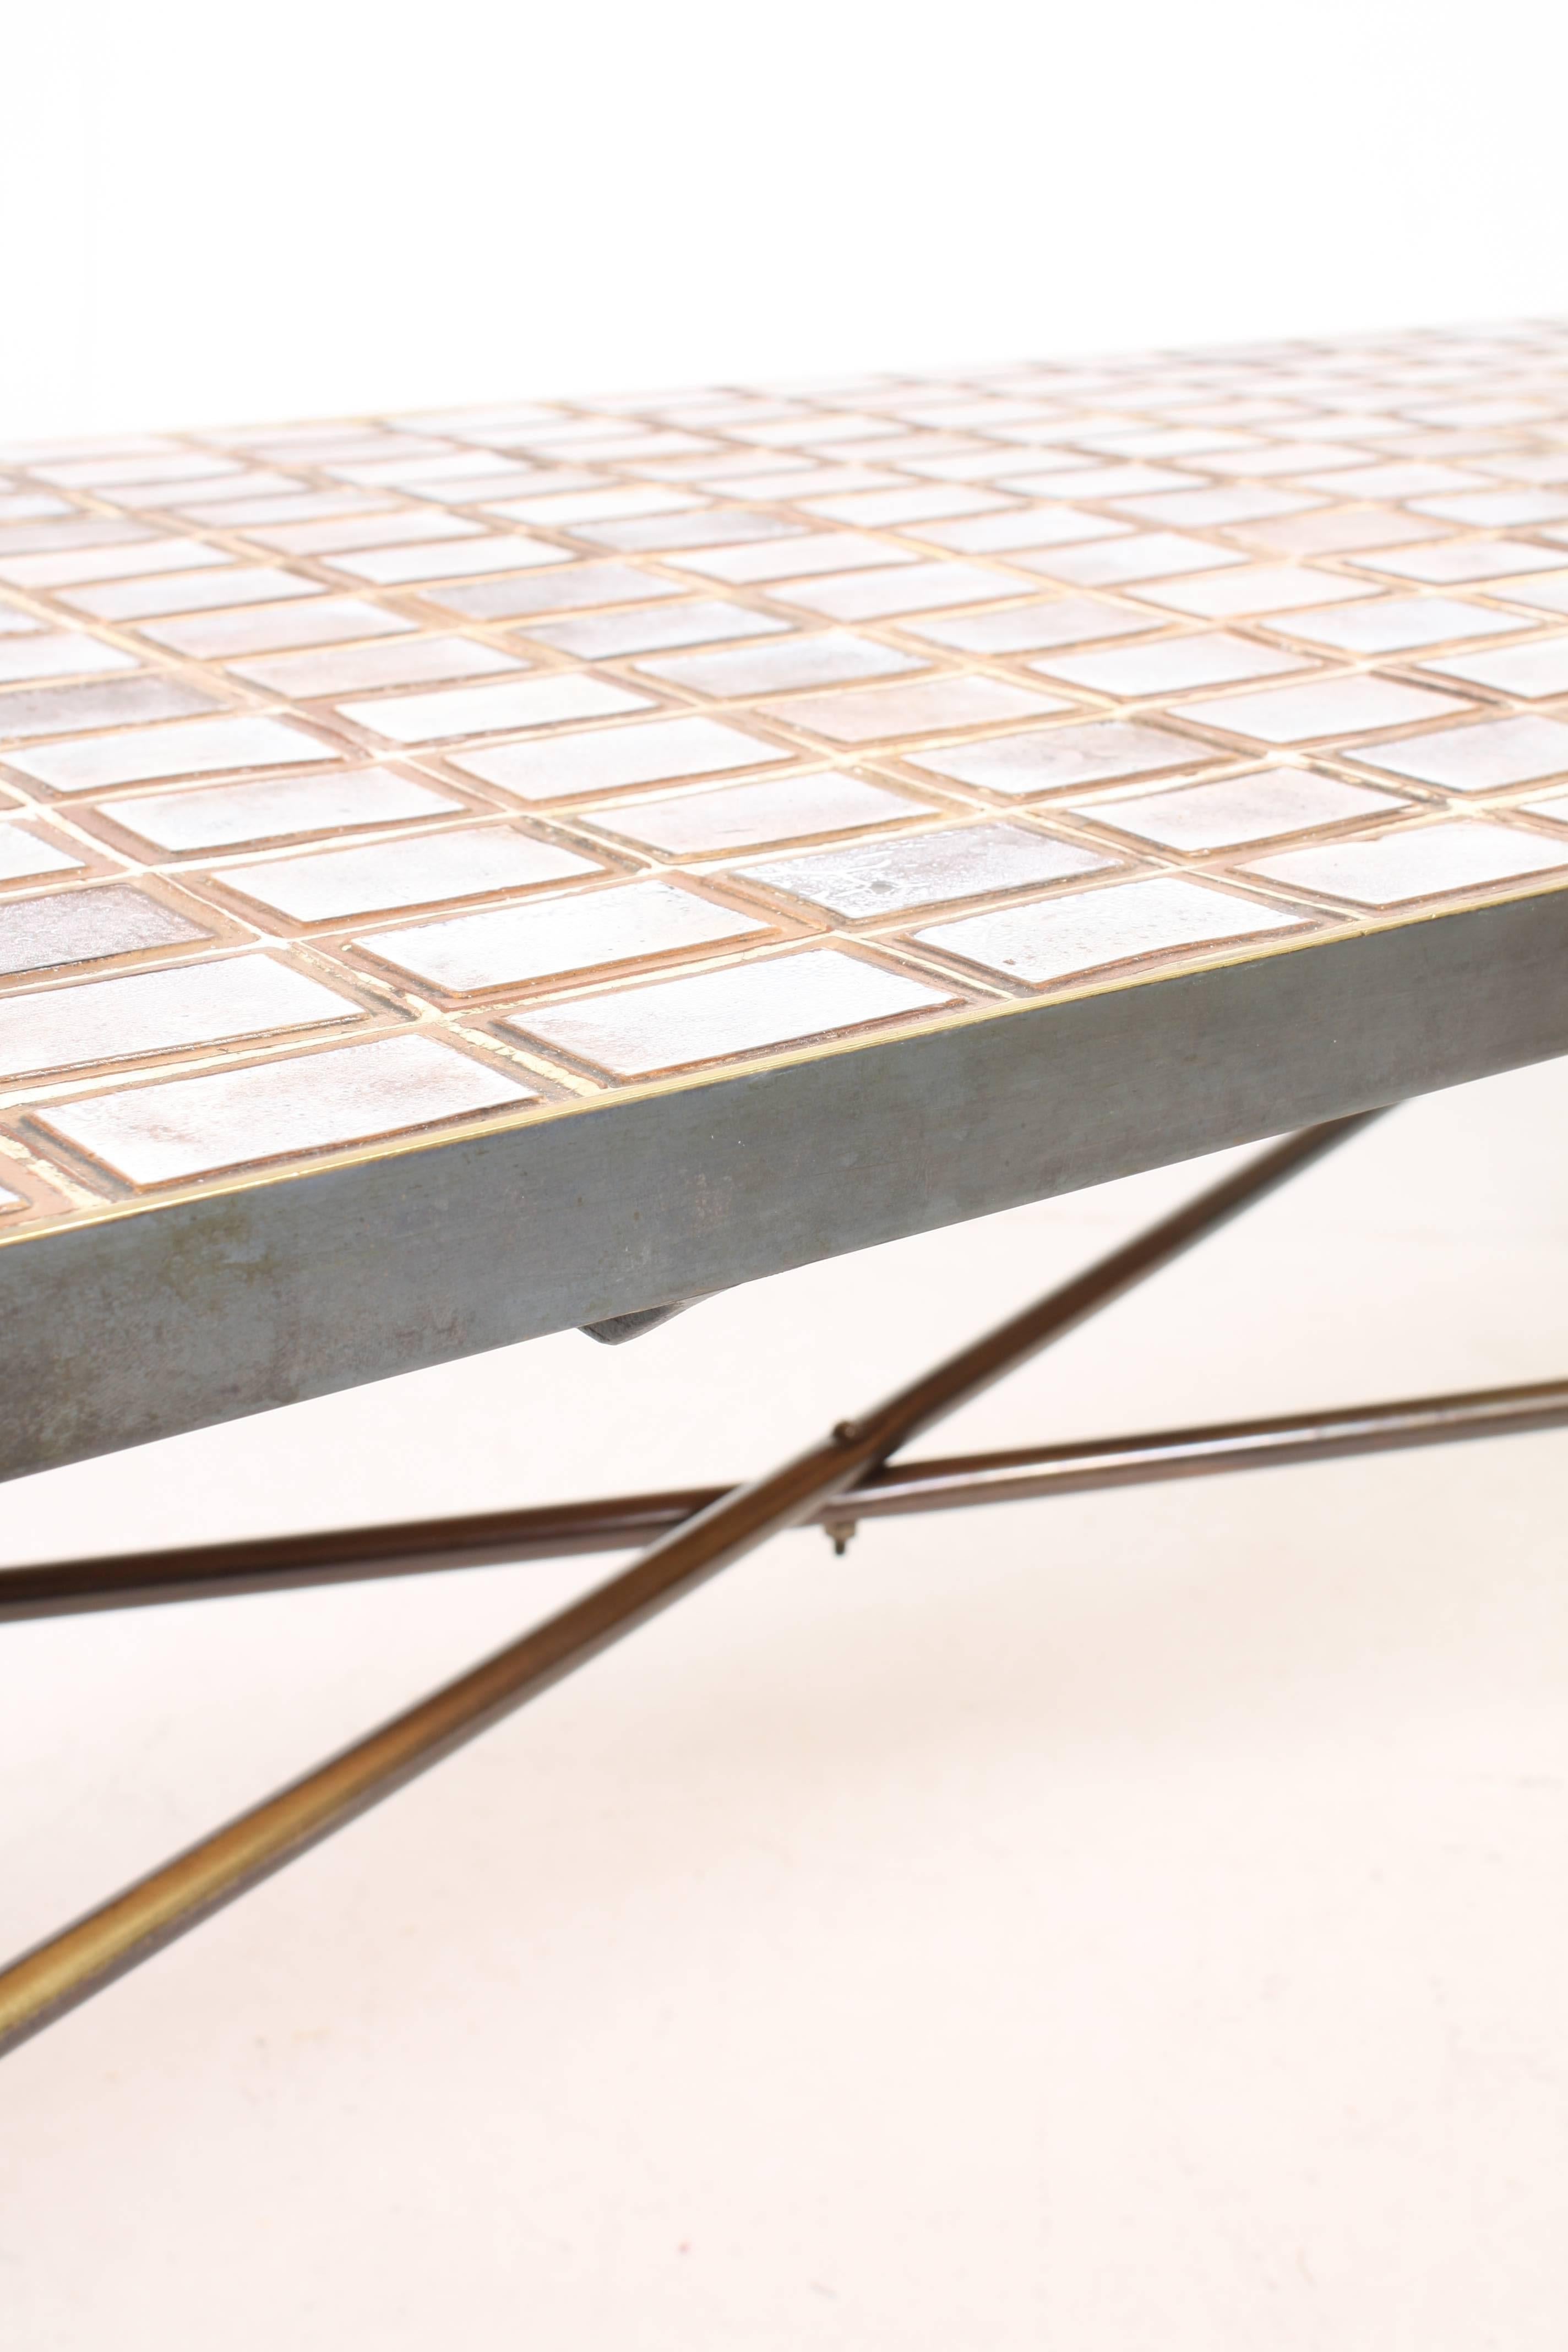 Scandinavian Modern Dainsh Tile Top Table